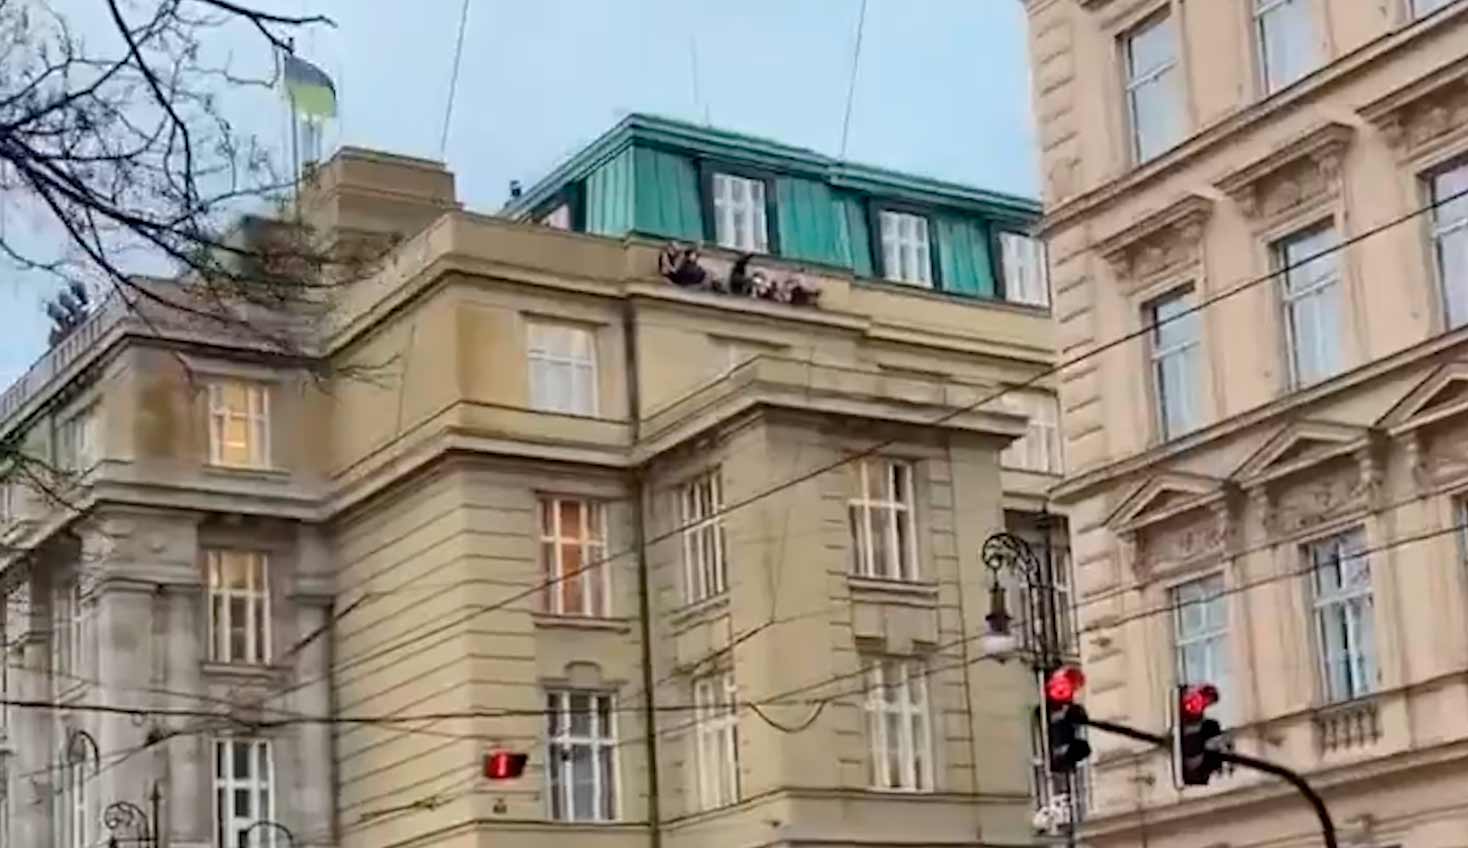 Skyting i Praha etterlater 11 døde etter at skytteren åpnet ild på universitet. Bilder og video: Gjengivelse Twitter @BabakTaghvaee1